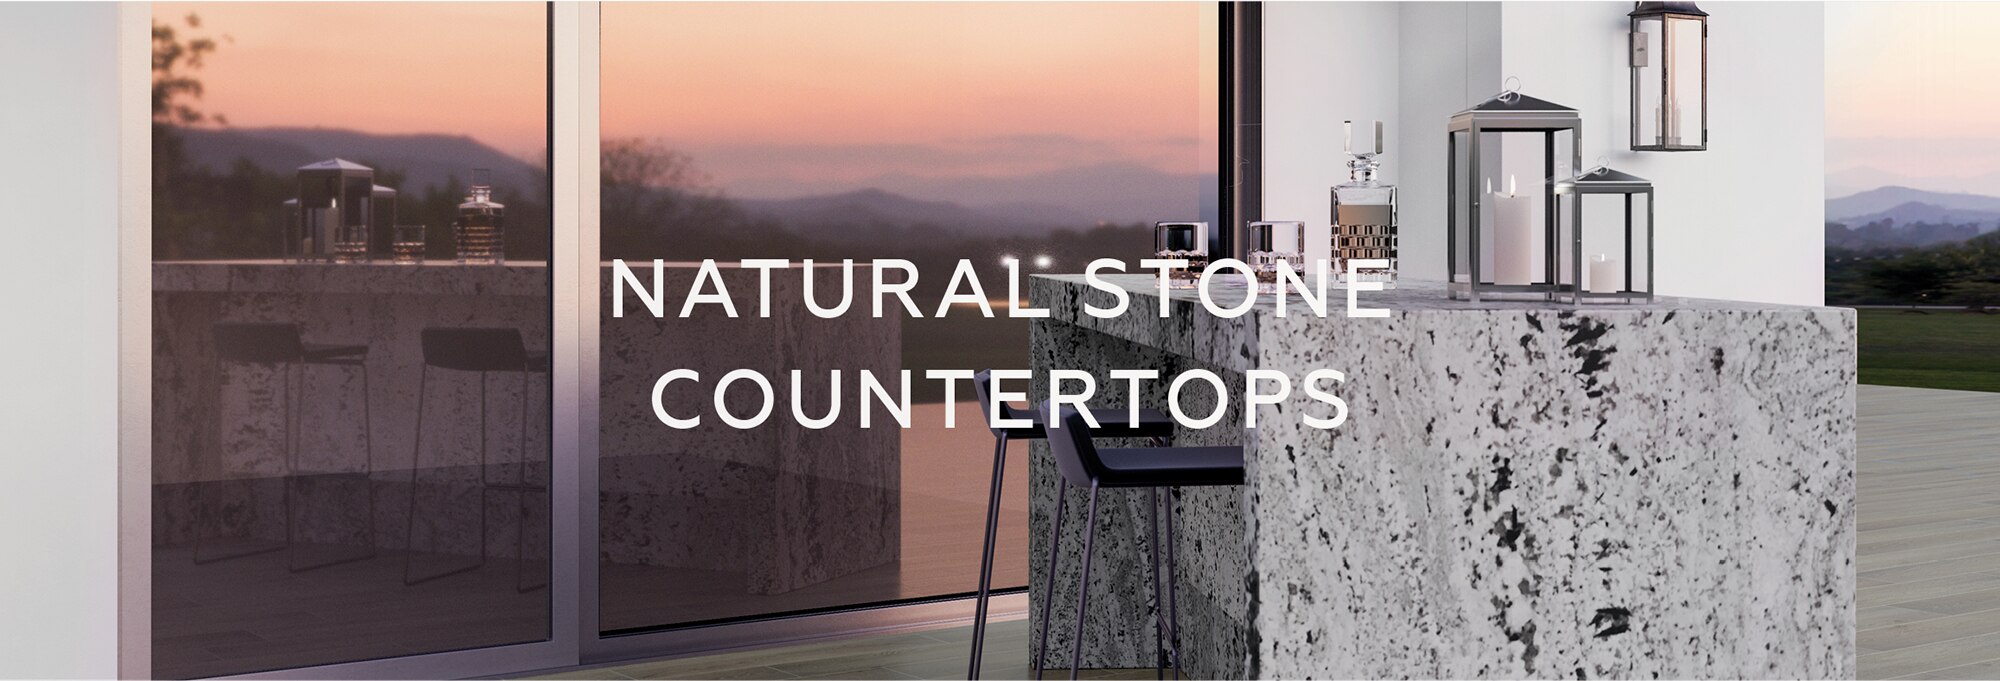 Natural stone countertops